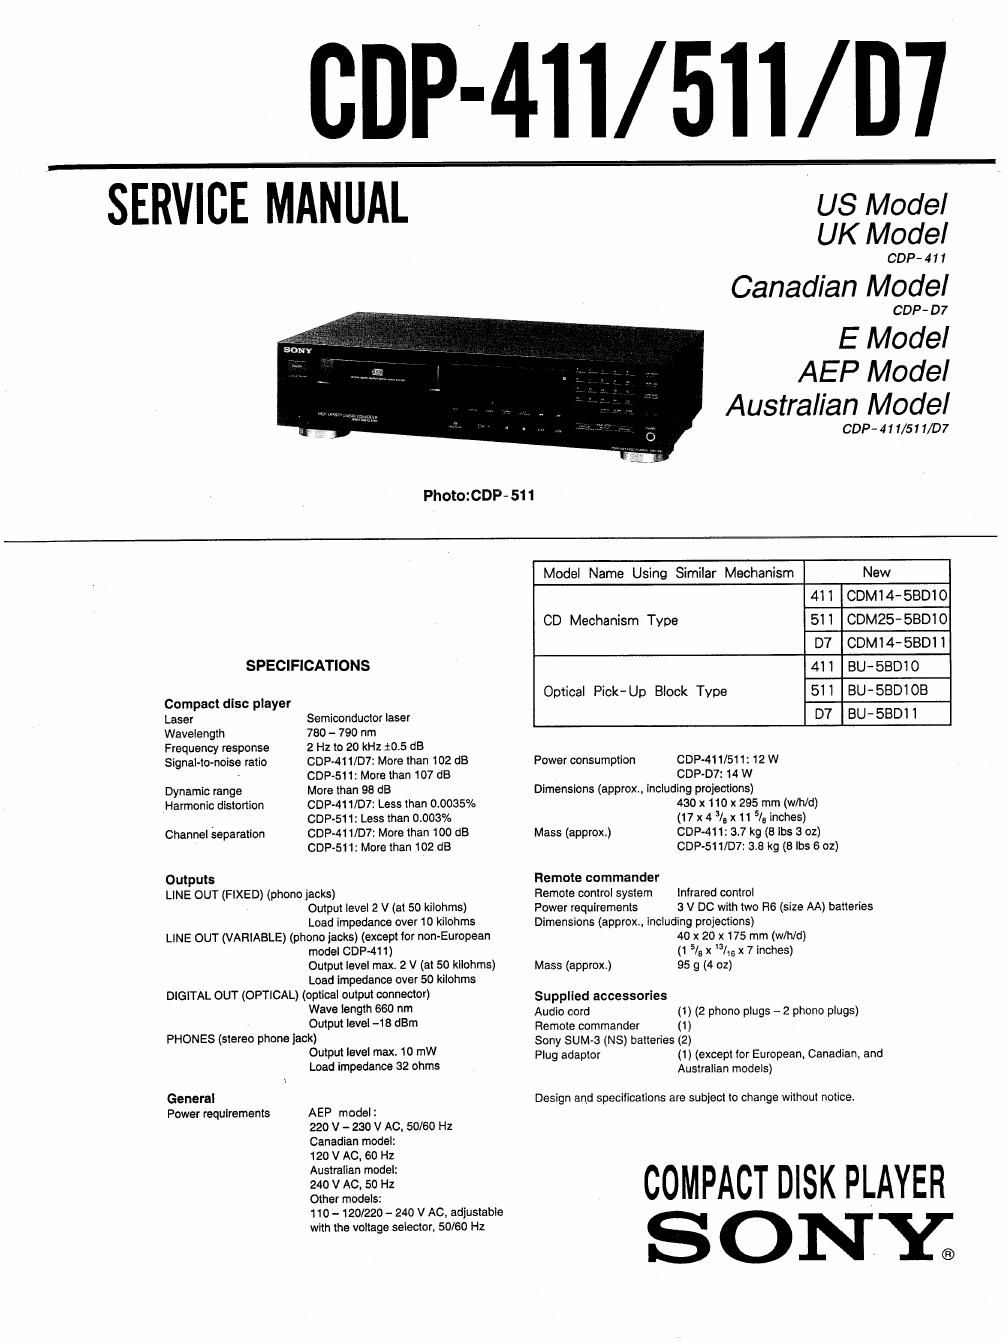 sony cdp 411 service manual